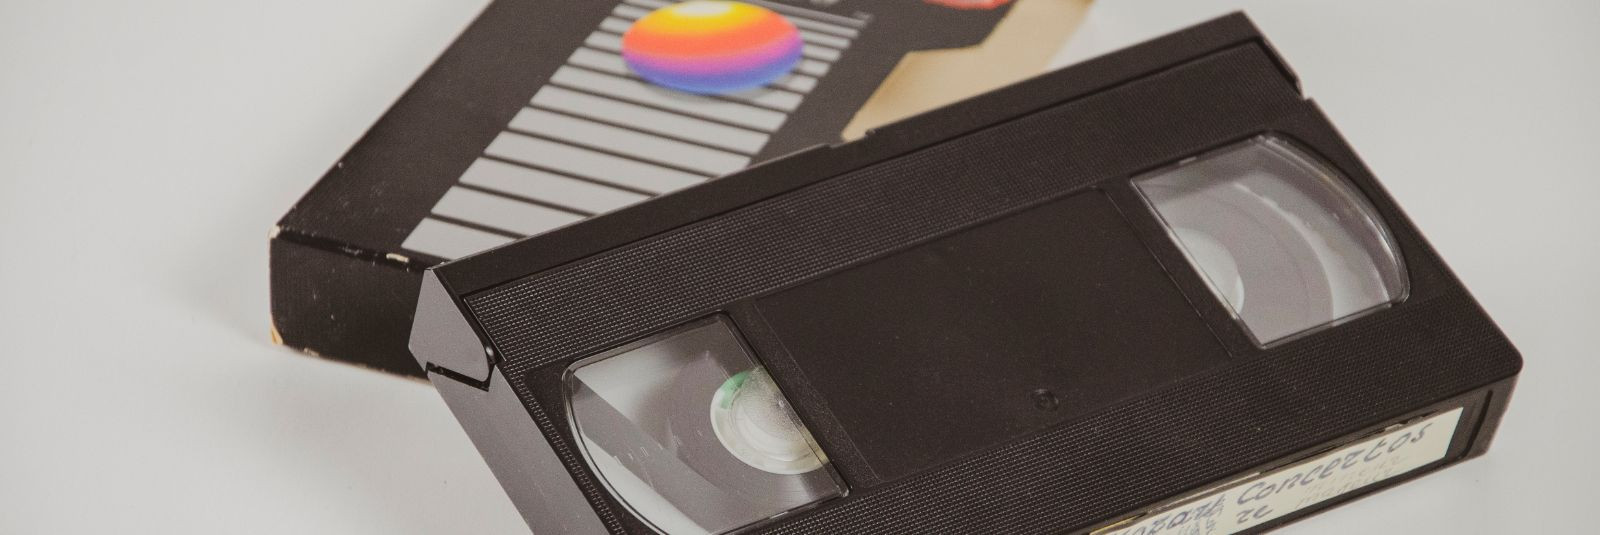 Kas sul on kodus vanu videokassette, mida sa ei saa enam vaadata, ...